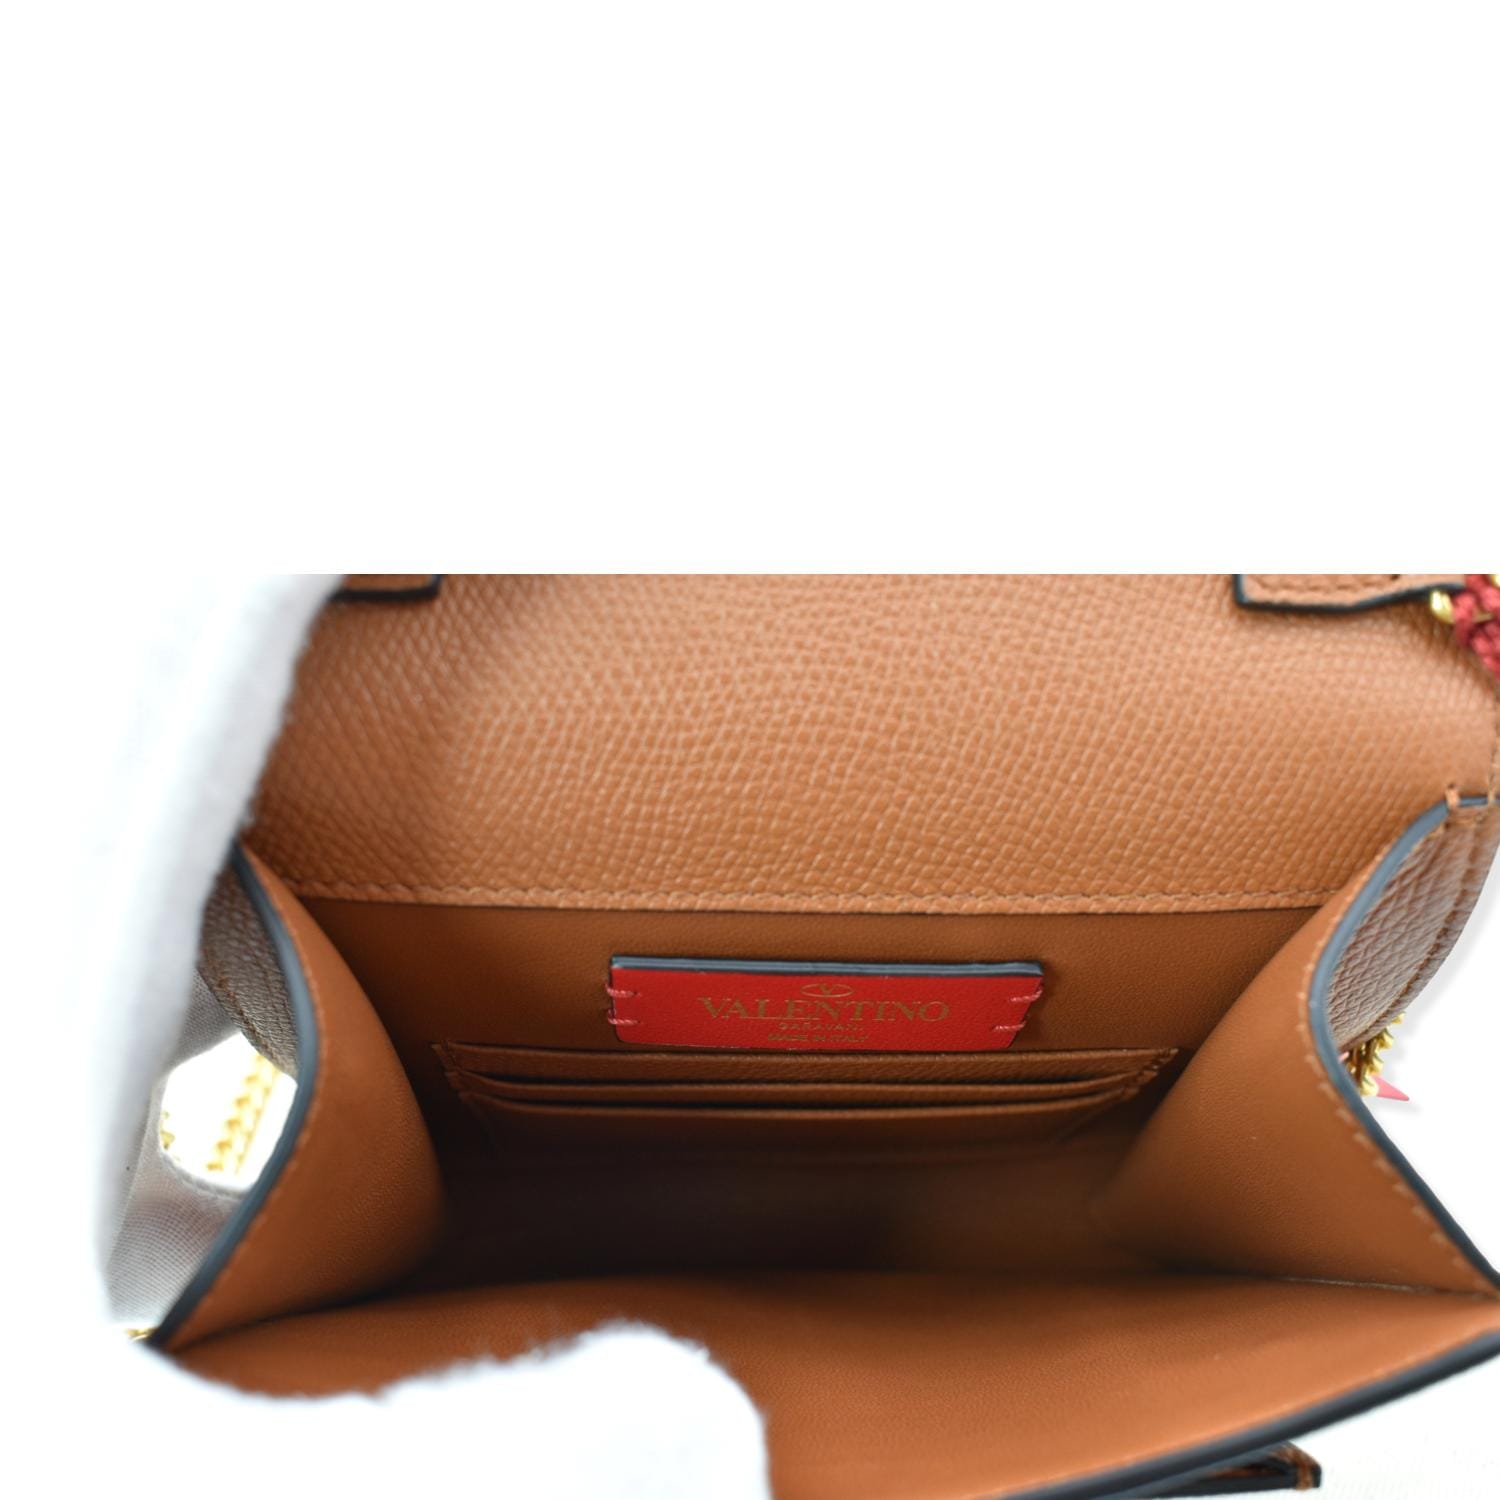 Vsling leather handbag Valentino Garavani Orange in Leather - 32164833